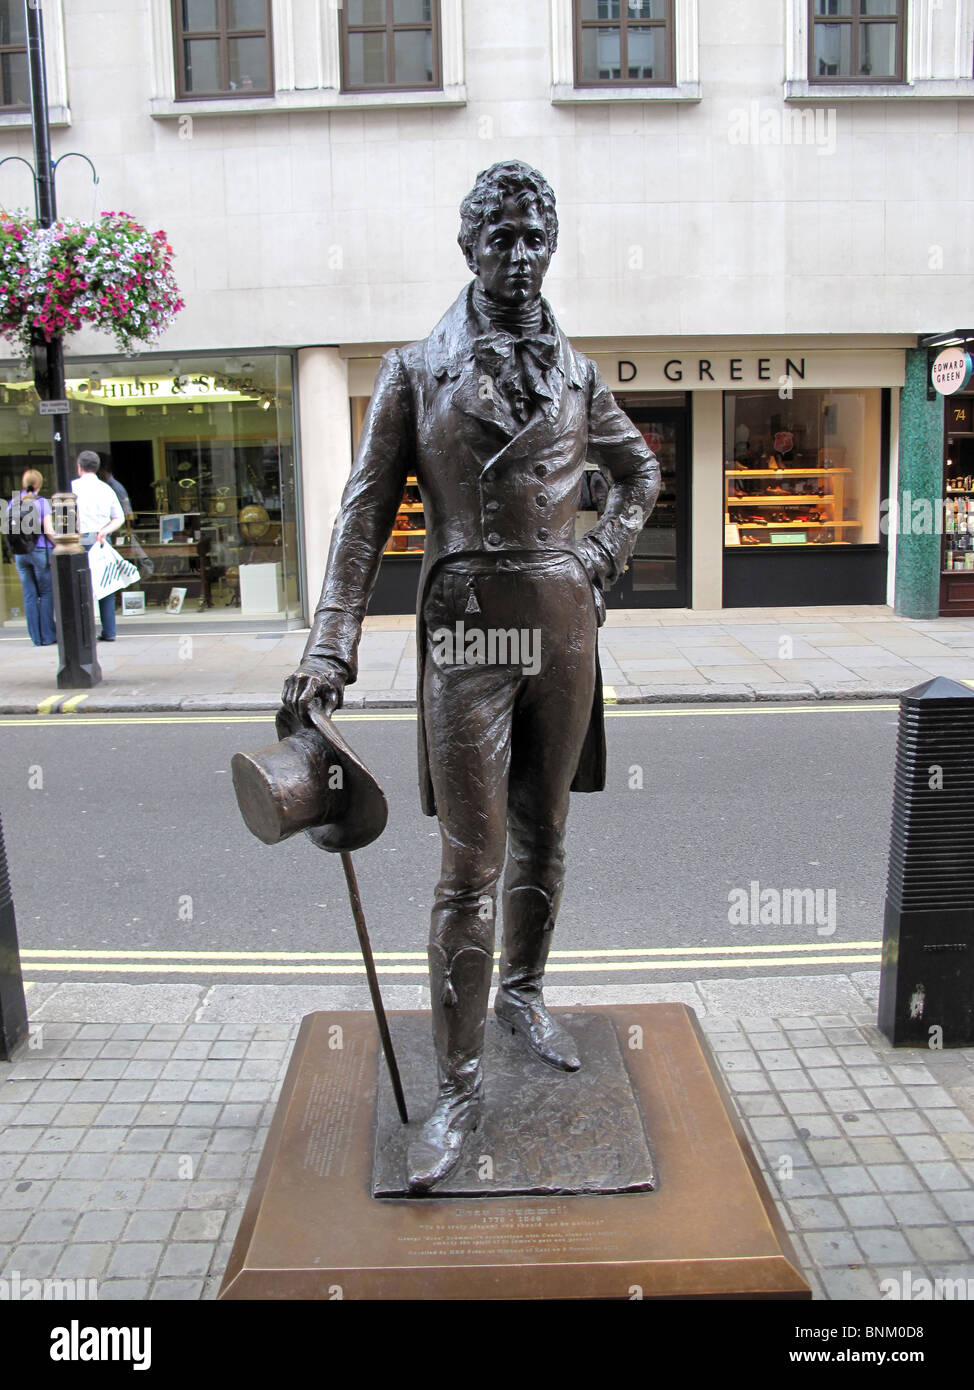 Beau Brummell Regency Dandy statue Jermyn Street London Stock Photo